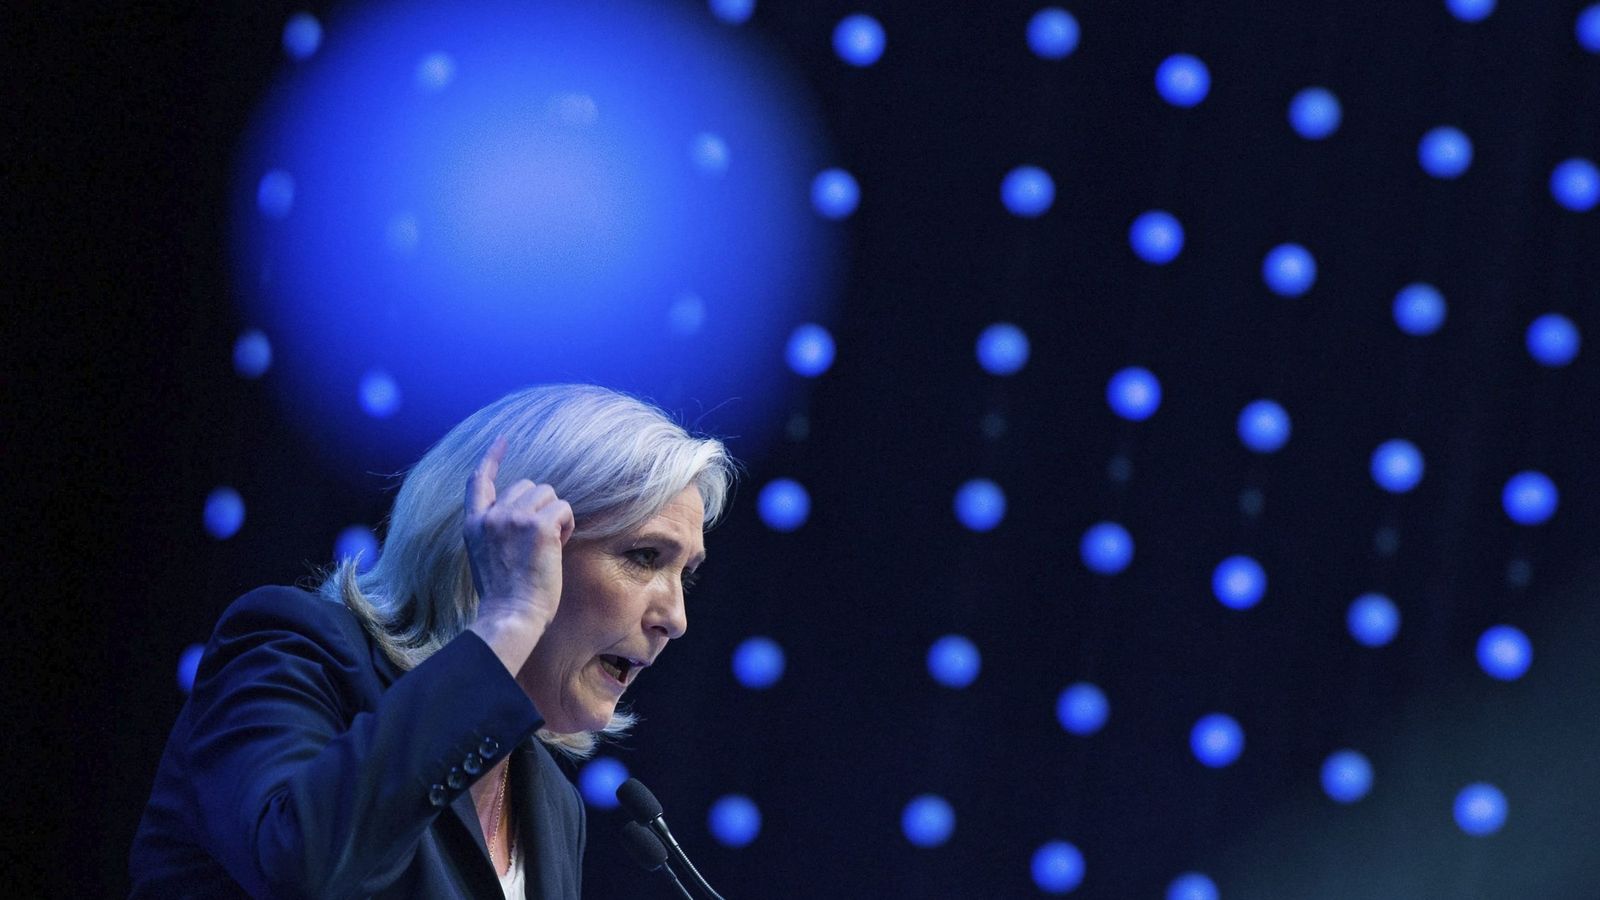 Foto: La líder del Frente Nacional, Marine Le Pen, en una fotografía de archivo. (Efe) 